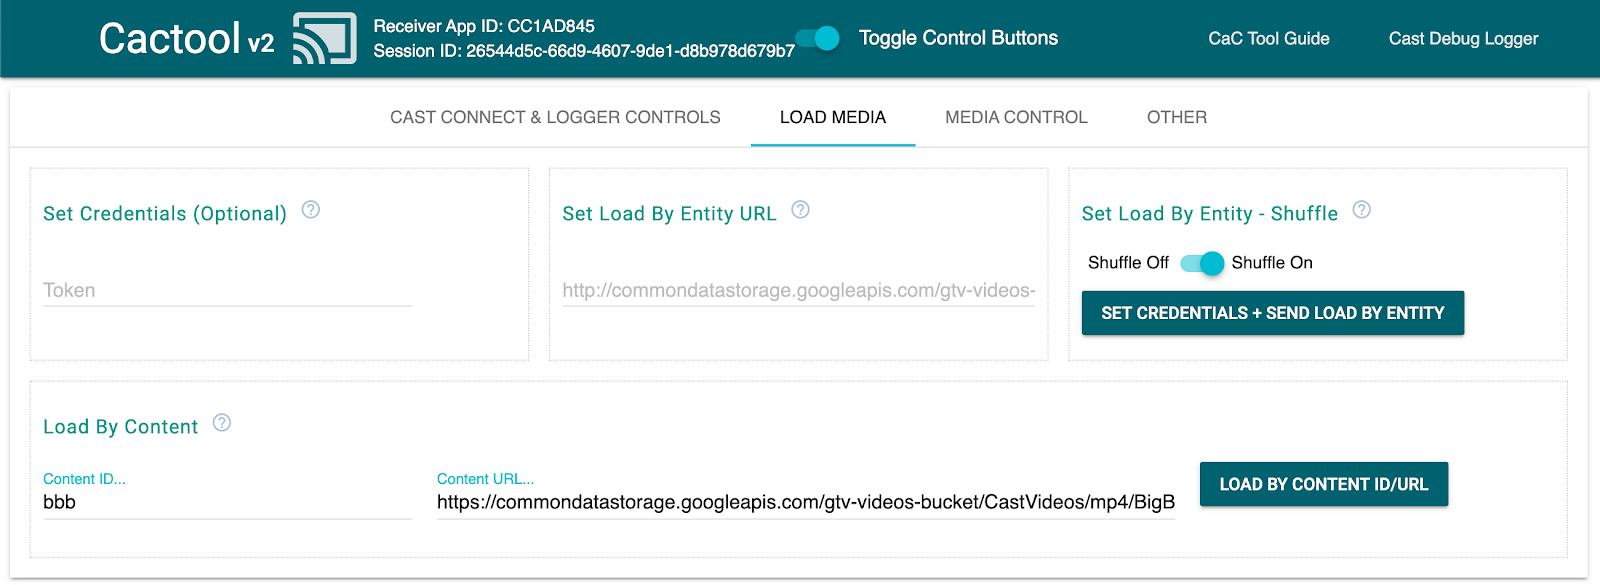 命令和控制 (CaC) 工具的“Load Media”标签页的图片